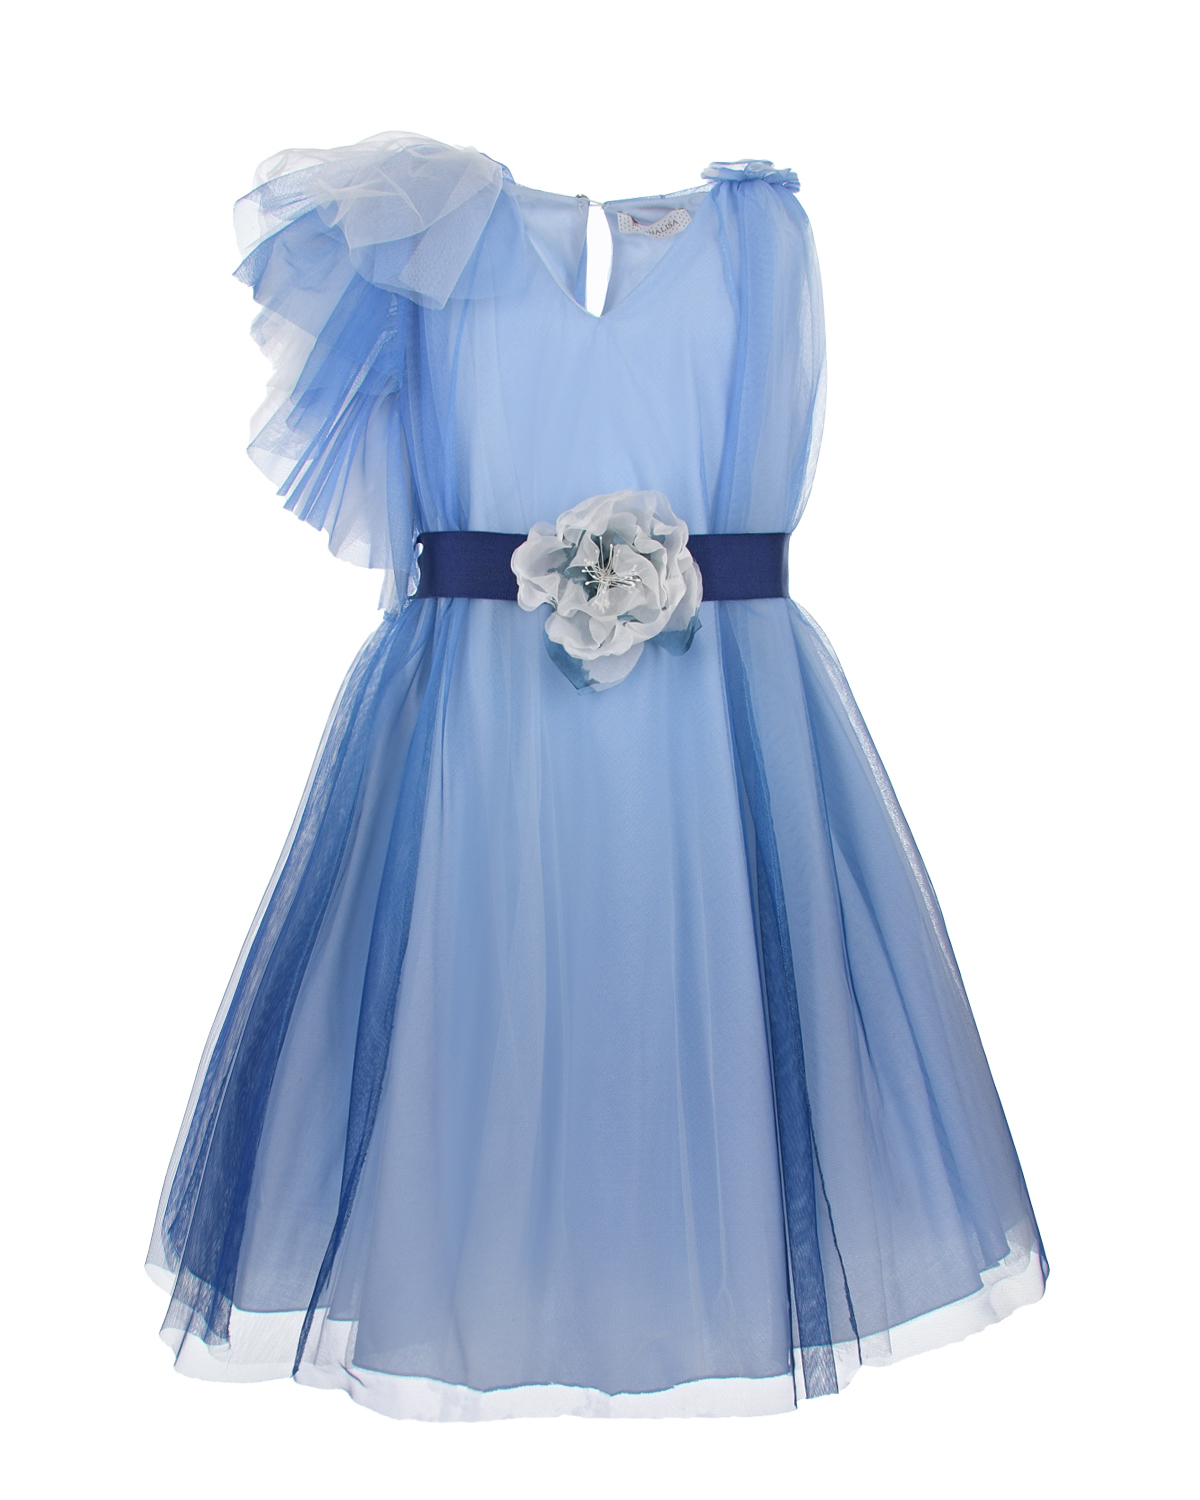 Голубое платье с аппликацией "цветок" на поясе Monnalisa, размер 152 - фото 1